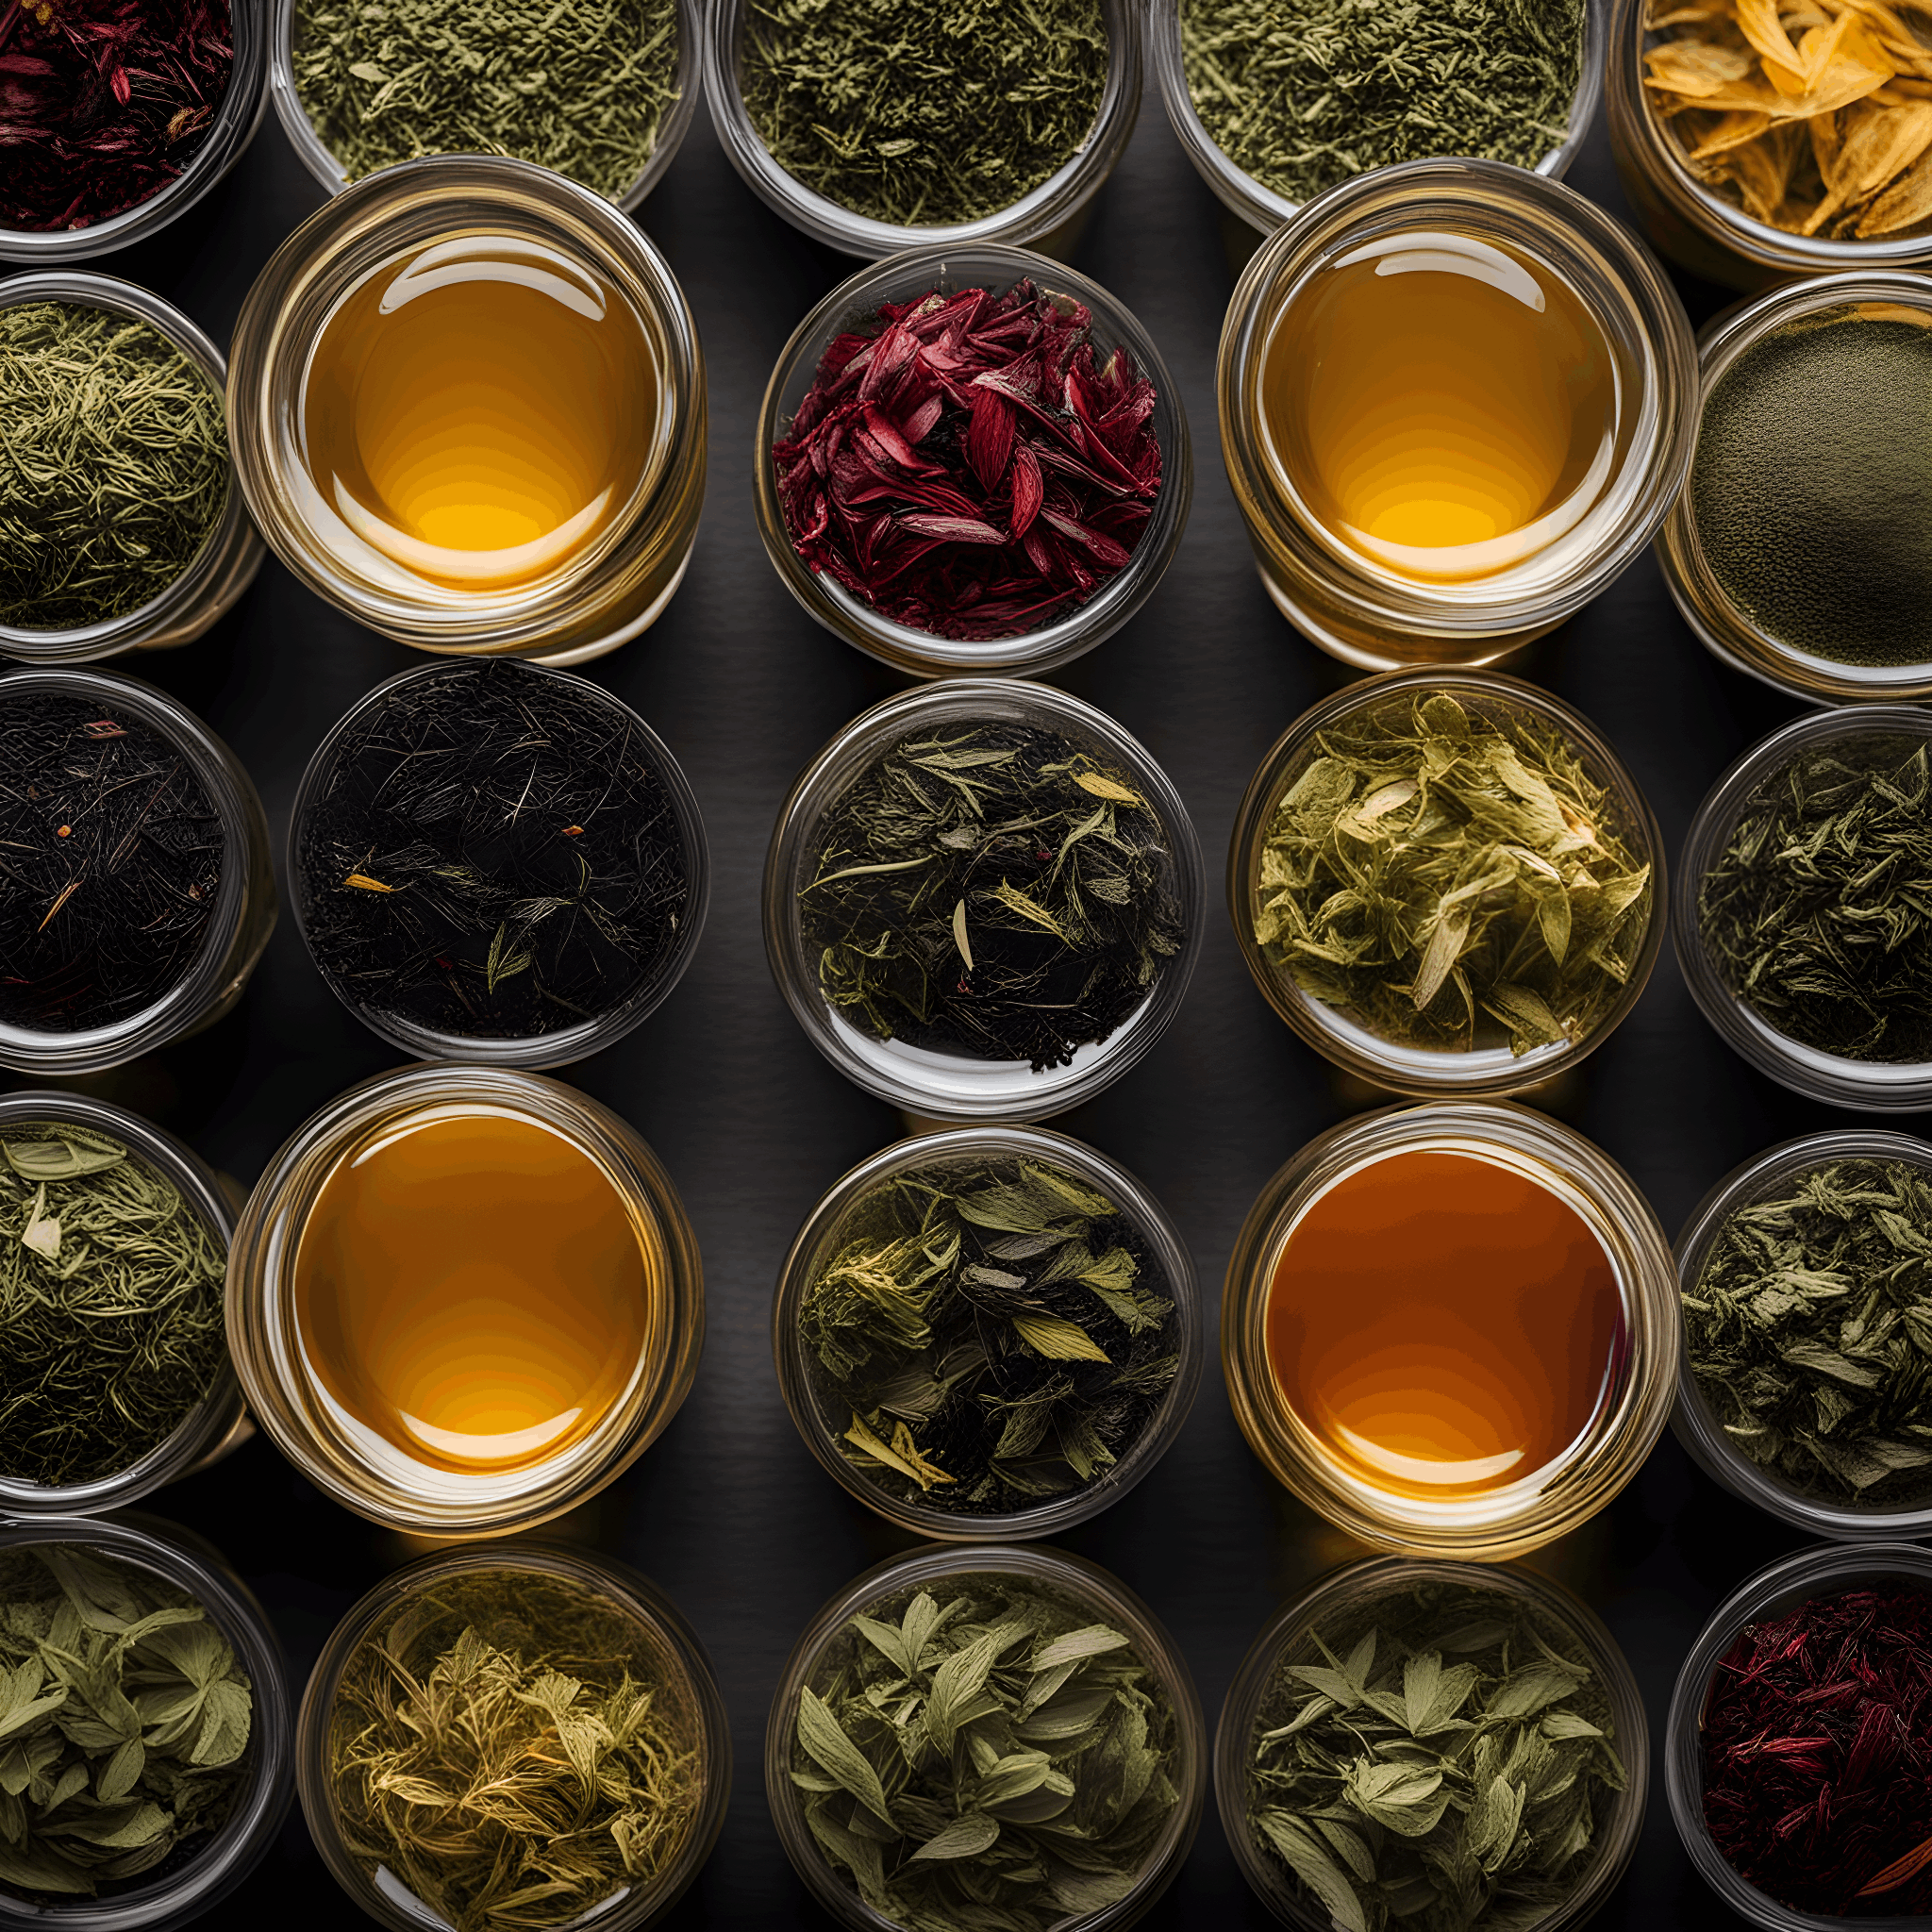 Choose your own brewed leaf tea bundle